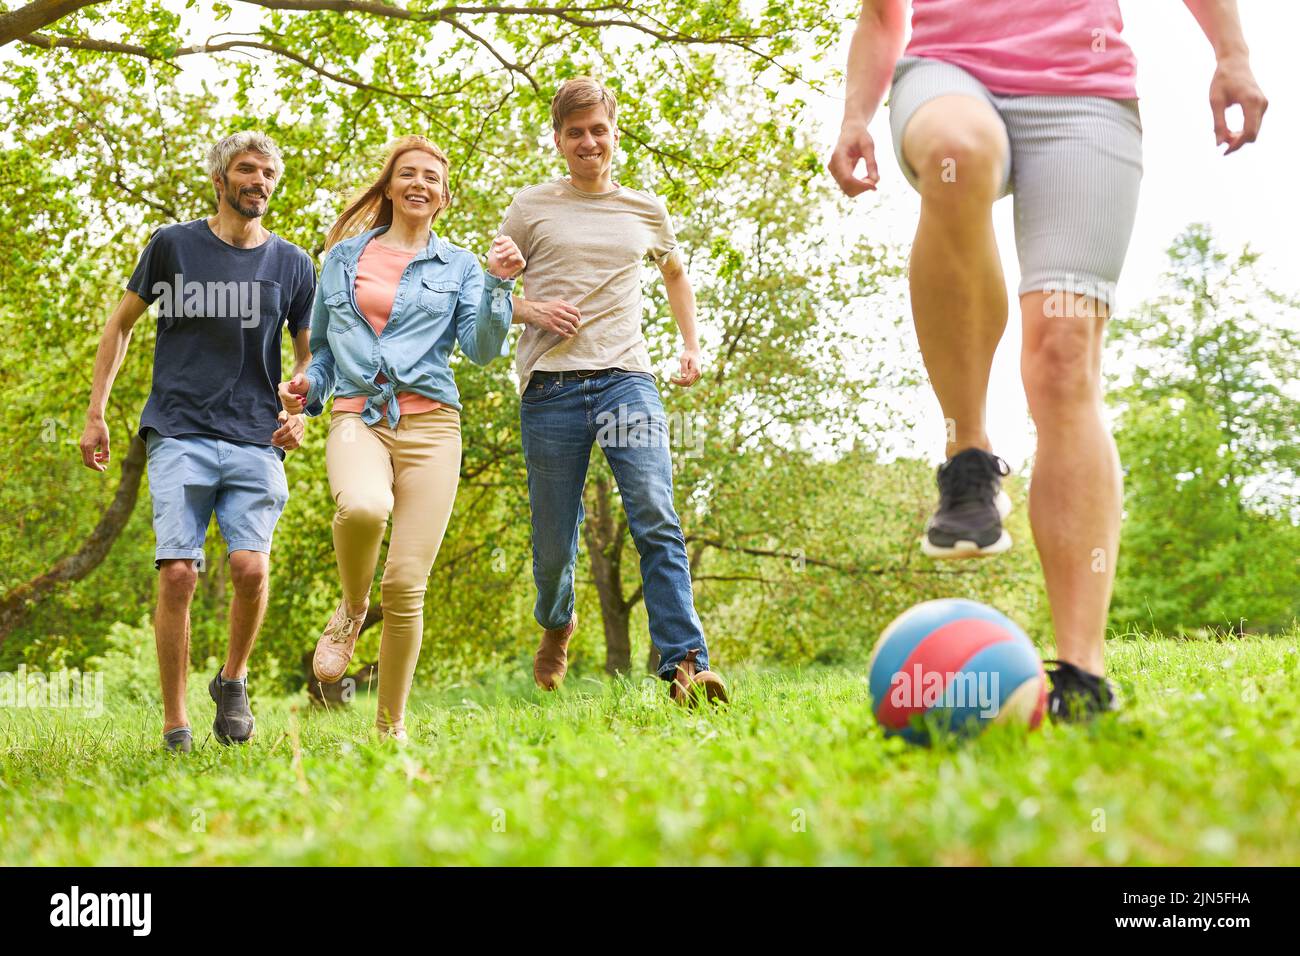 Los jóvenes se divierten jugando fútbol en un prado en verano en el evento de equipo Foto de stock